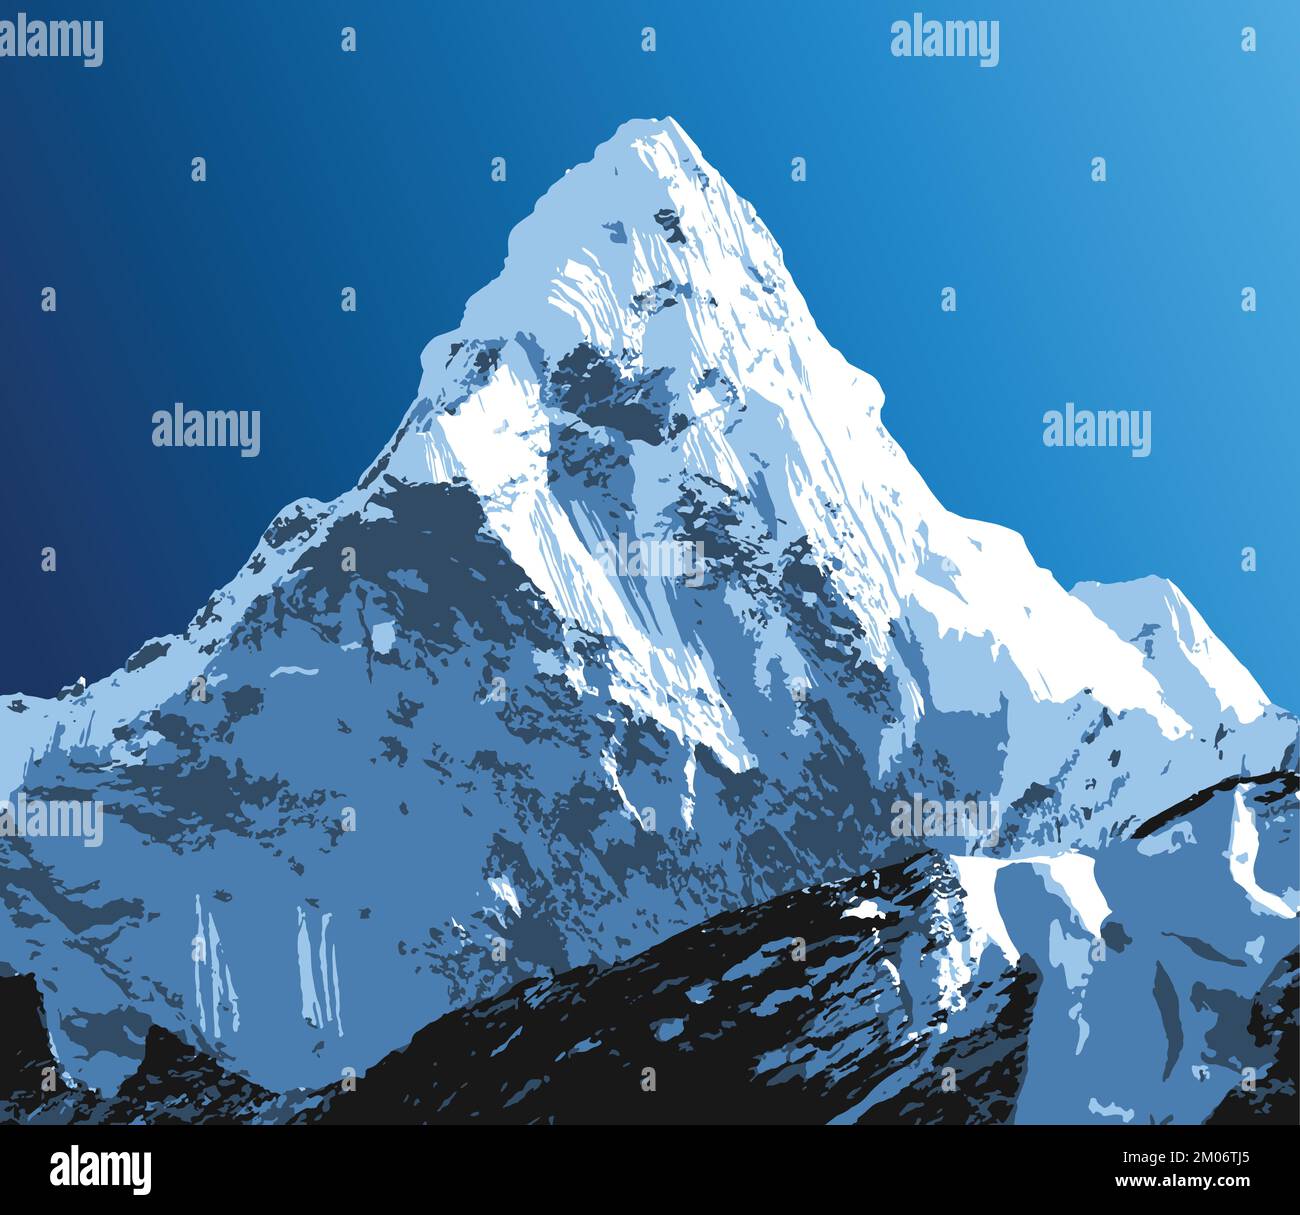 Der Vektor des Berges Ama Dablam veranschaulicht die Landschaft des himalaya-Gebirges Stock Vektor